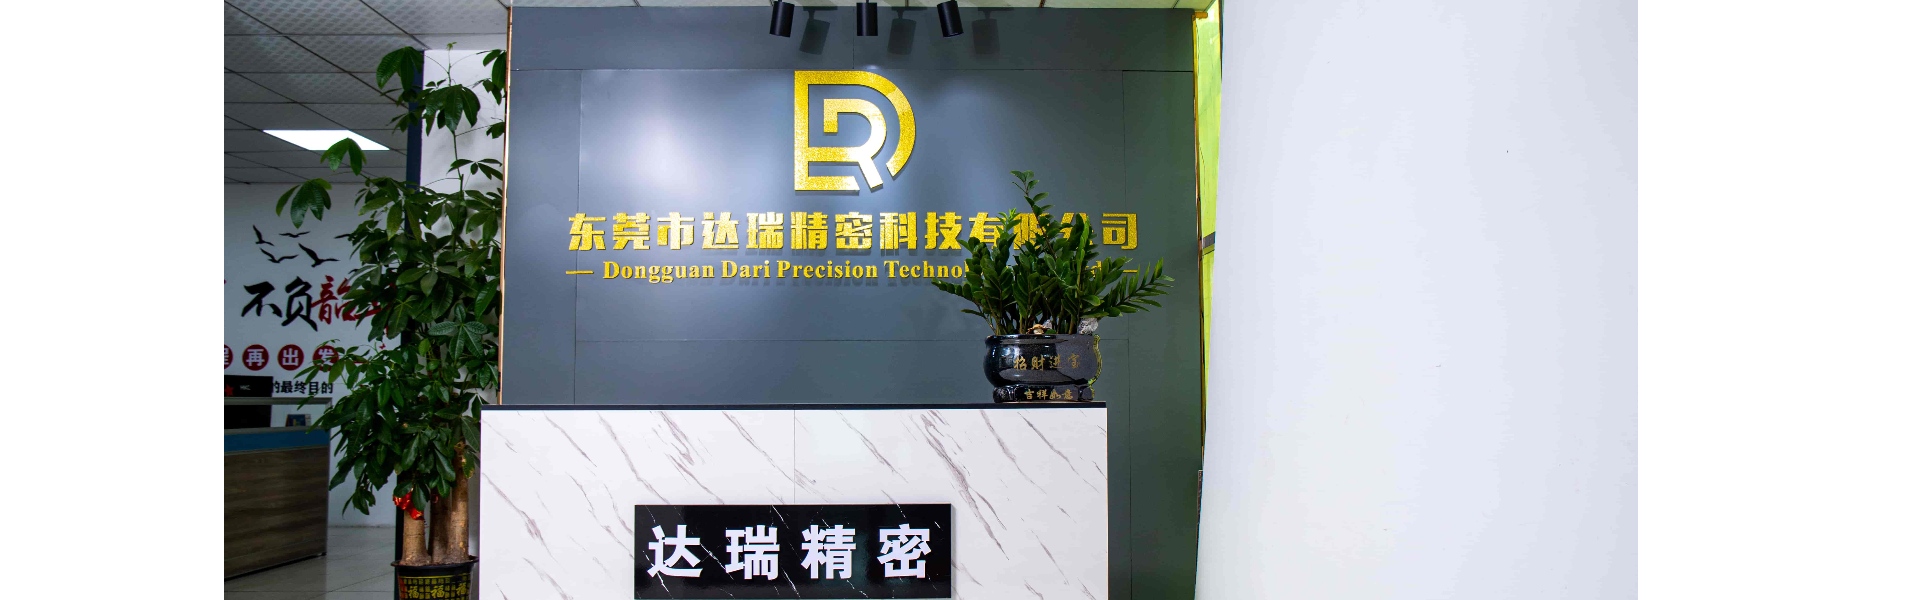 Пластиковая плесень, литье под давлением, пластиковая оболочка,Dongguan Darui Precision Technology Co., Ltd.